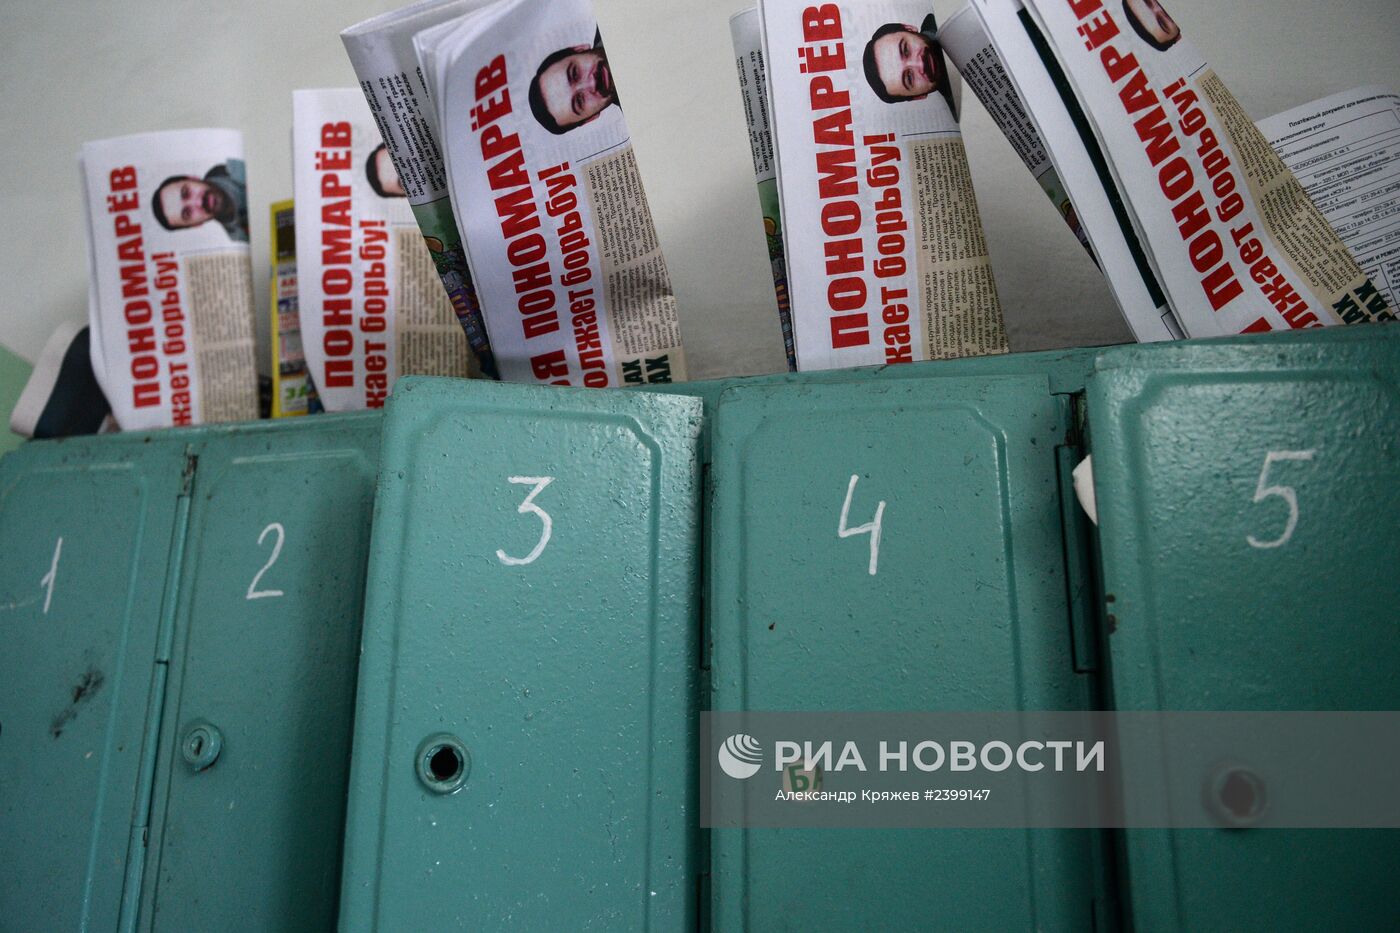 Подготовка к выборам мэра в Новосибирске